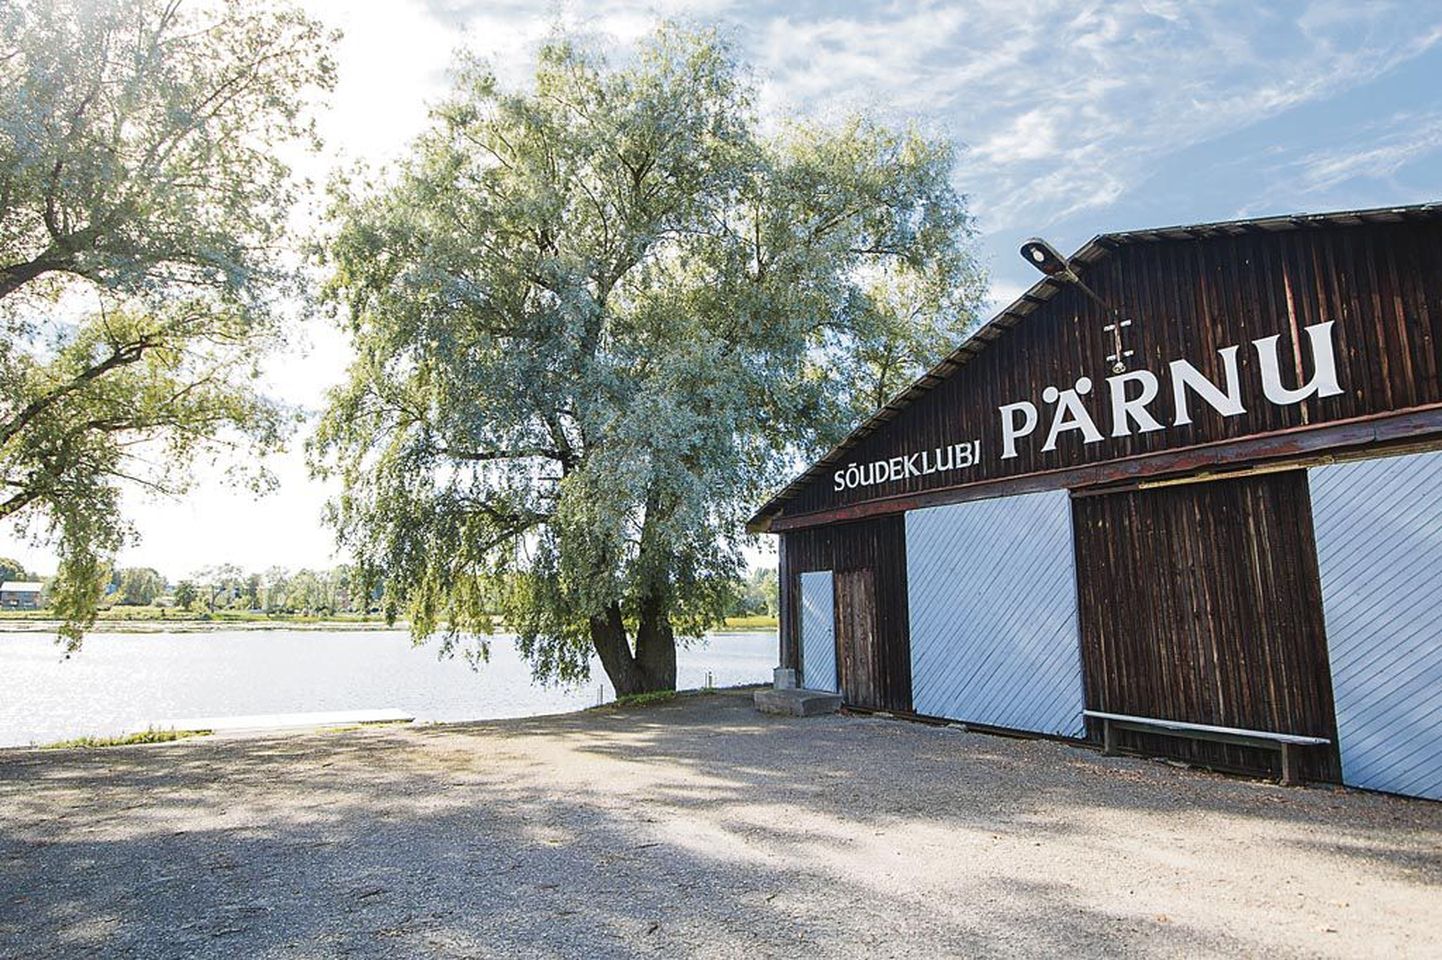 Sõudeklubi Pärnu kinnistut on ees ootamas suur ümberehitus, kuid millises mahus ja millal, on veel ebaselge.